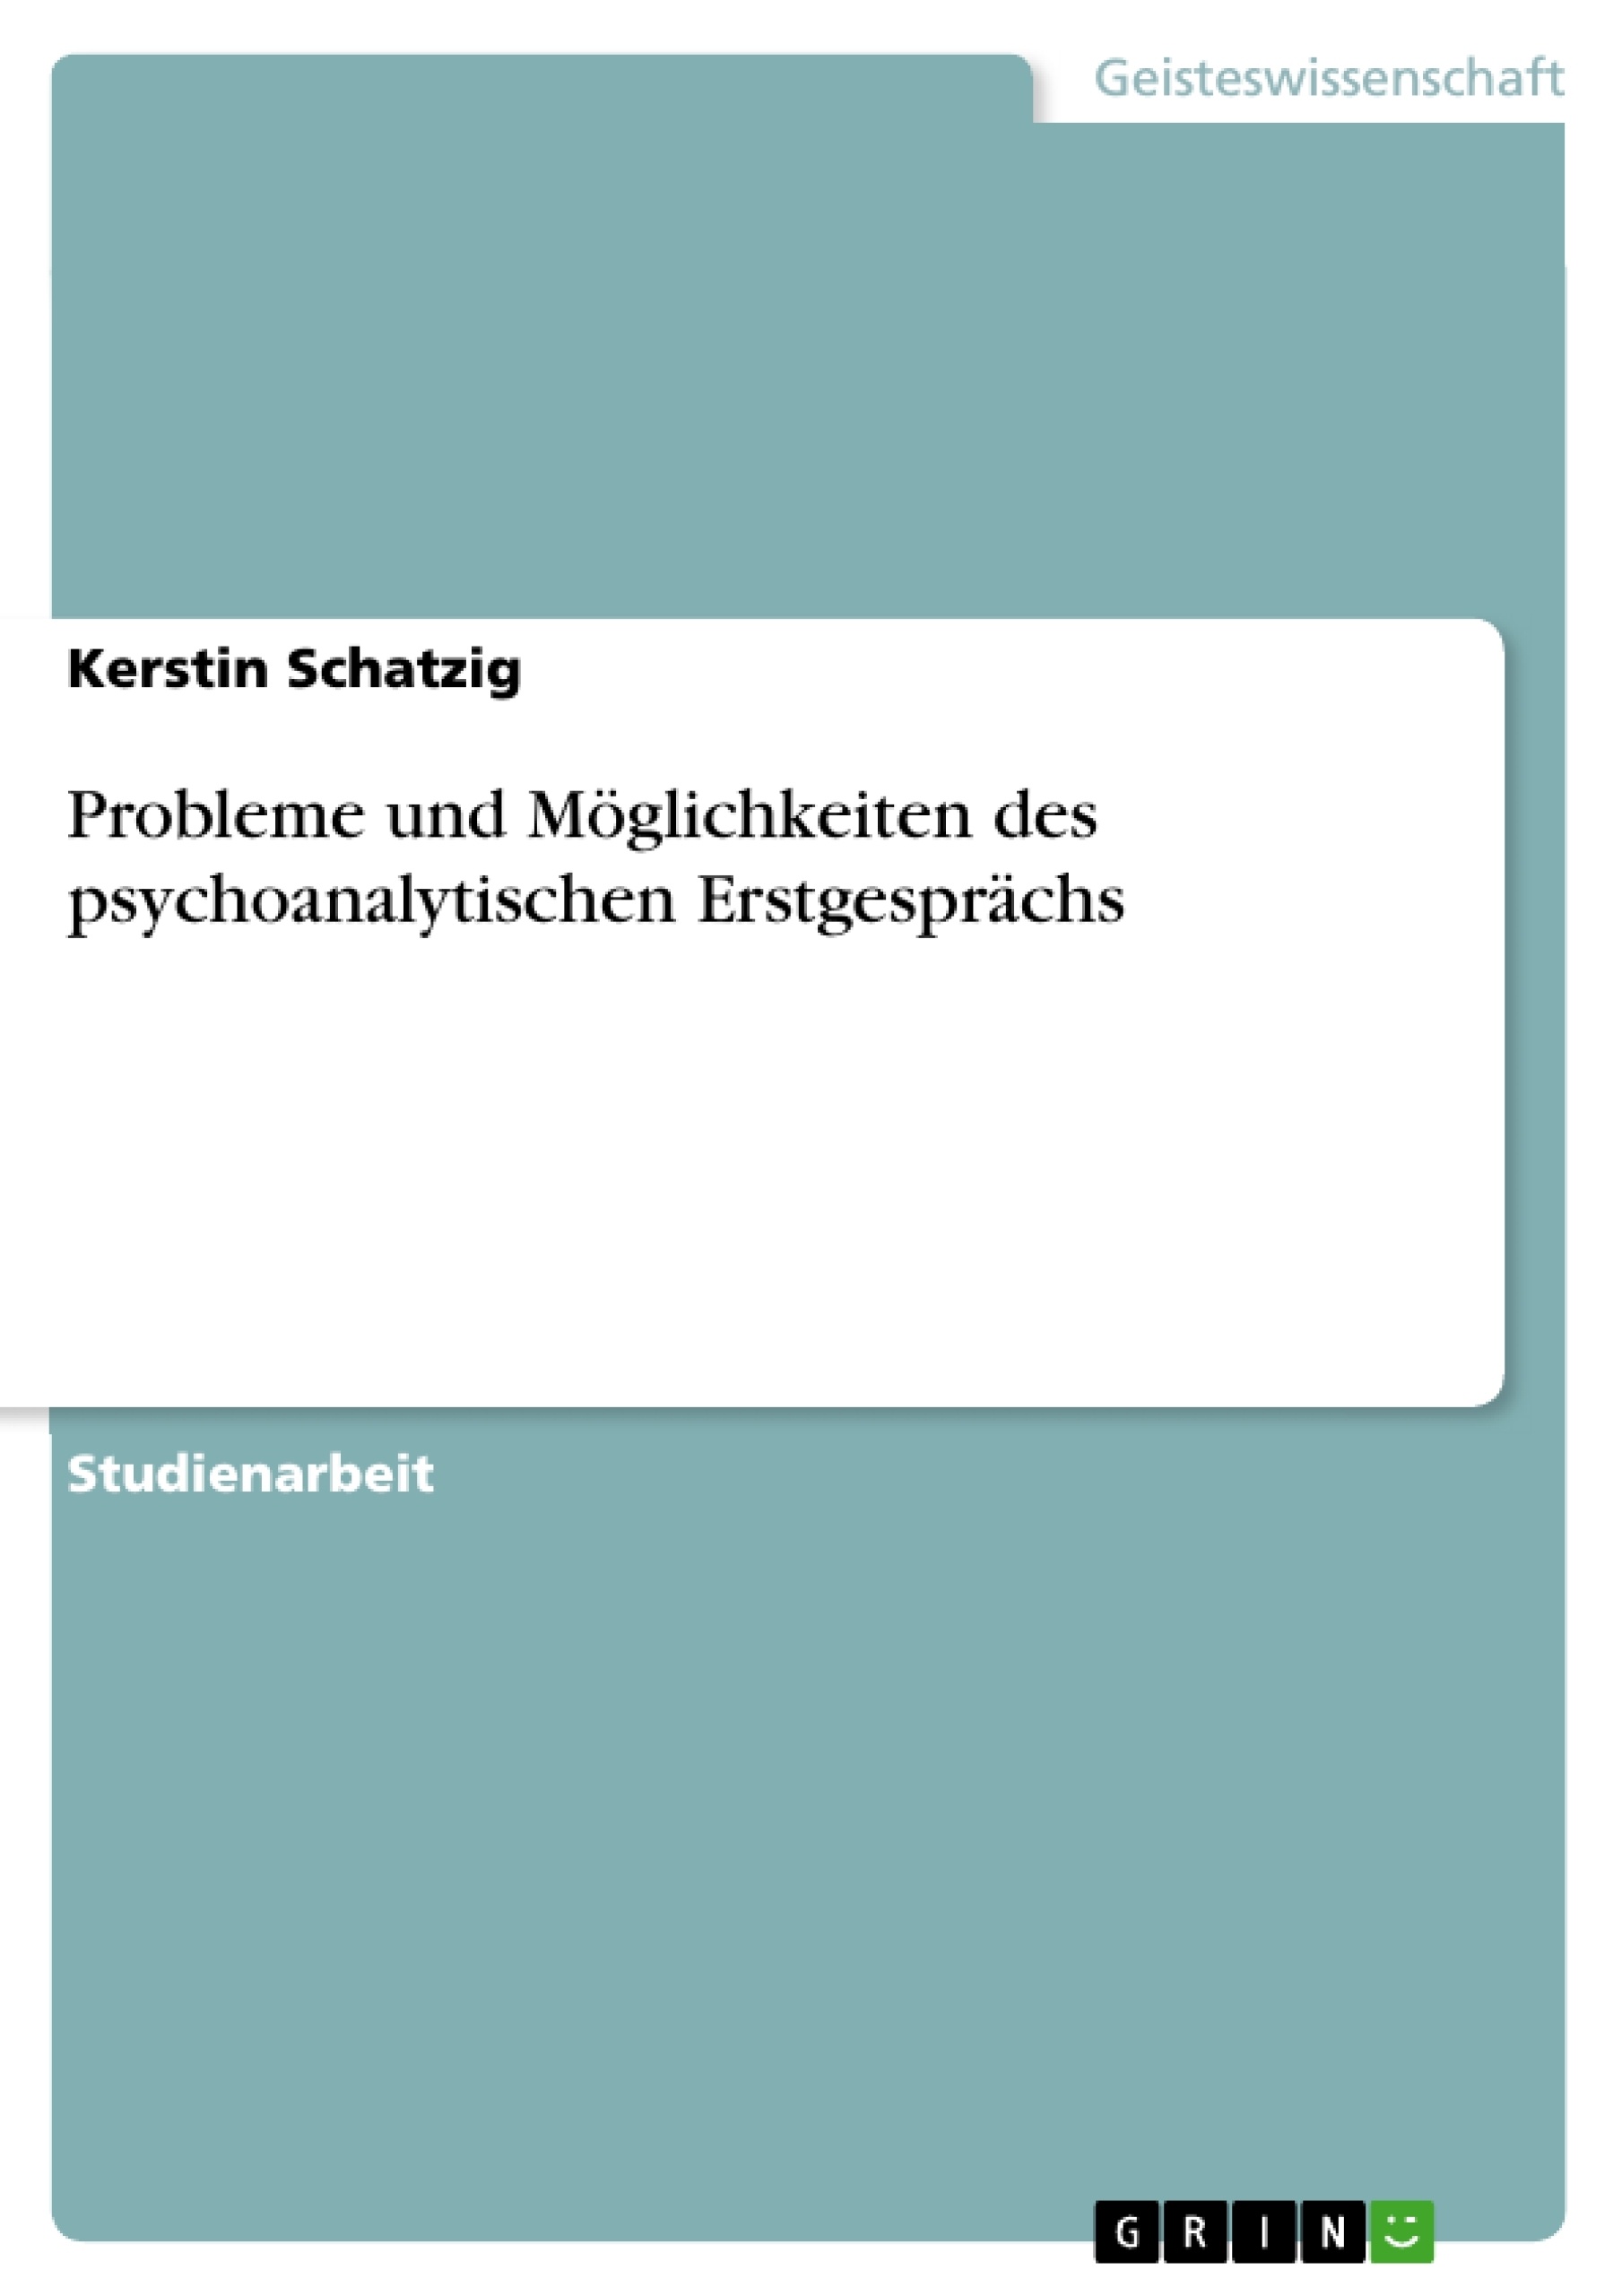 Título: Probleme und Möglichkeiten des psychoanalytischen Erstgesprächs